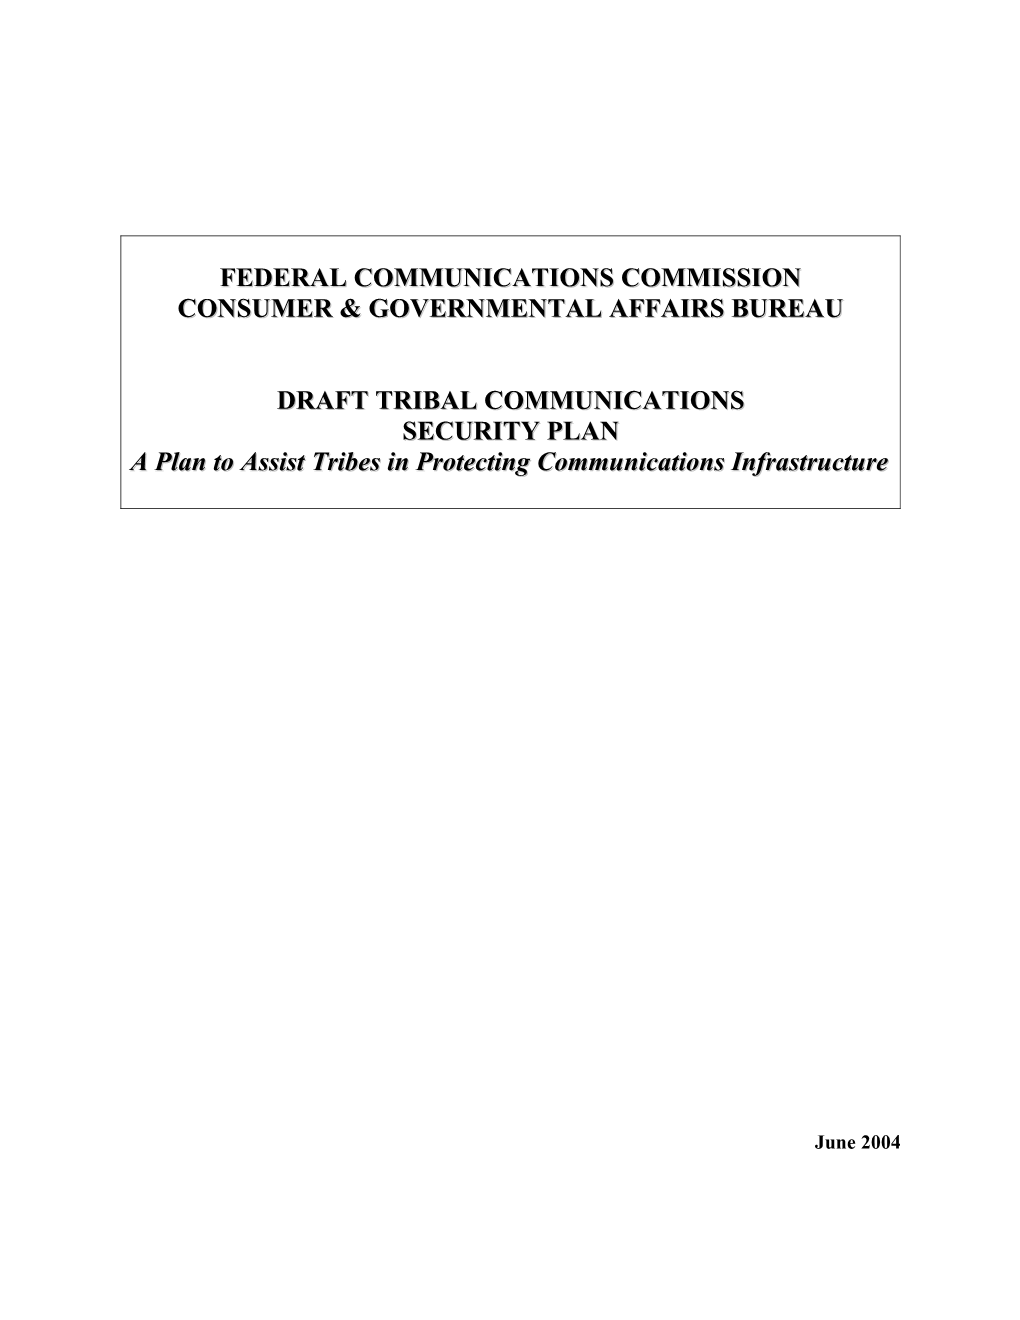 Consumer & Governmental Affairs Bureau